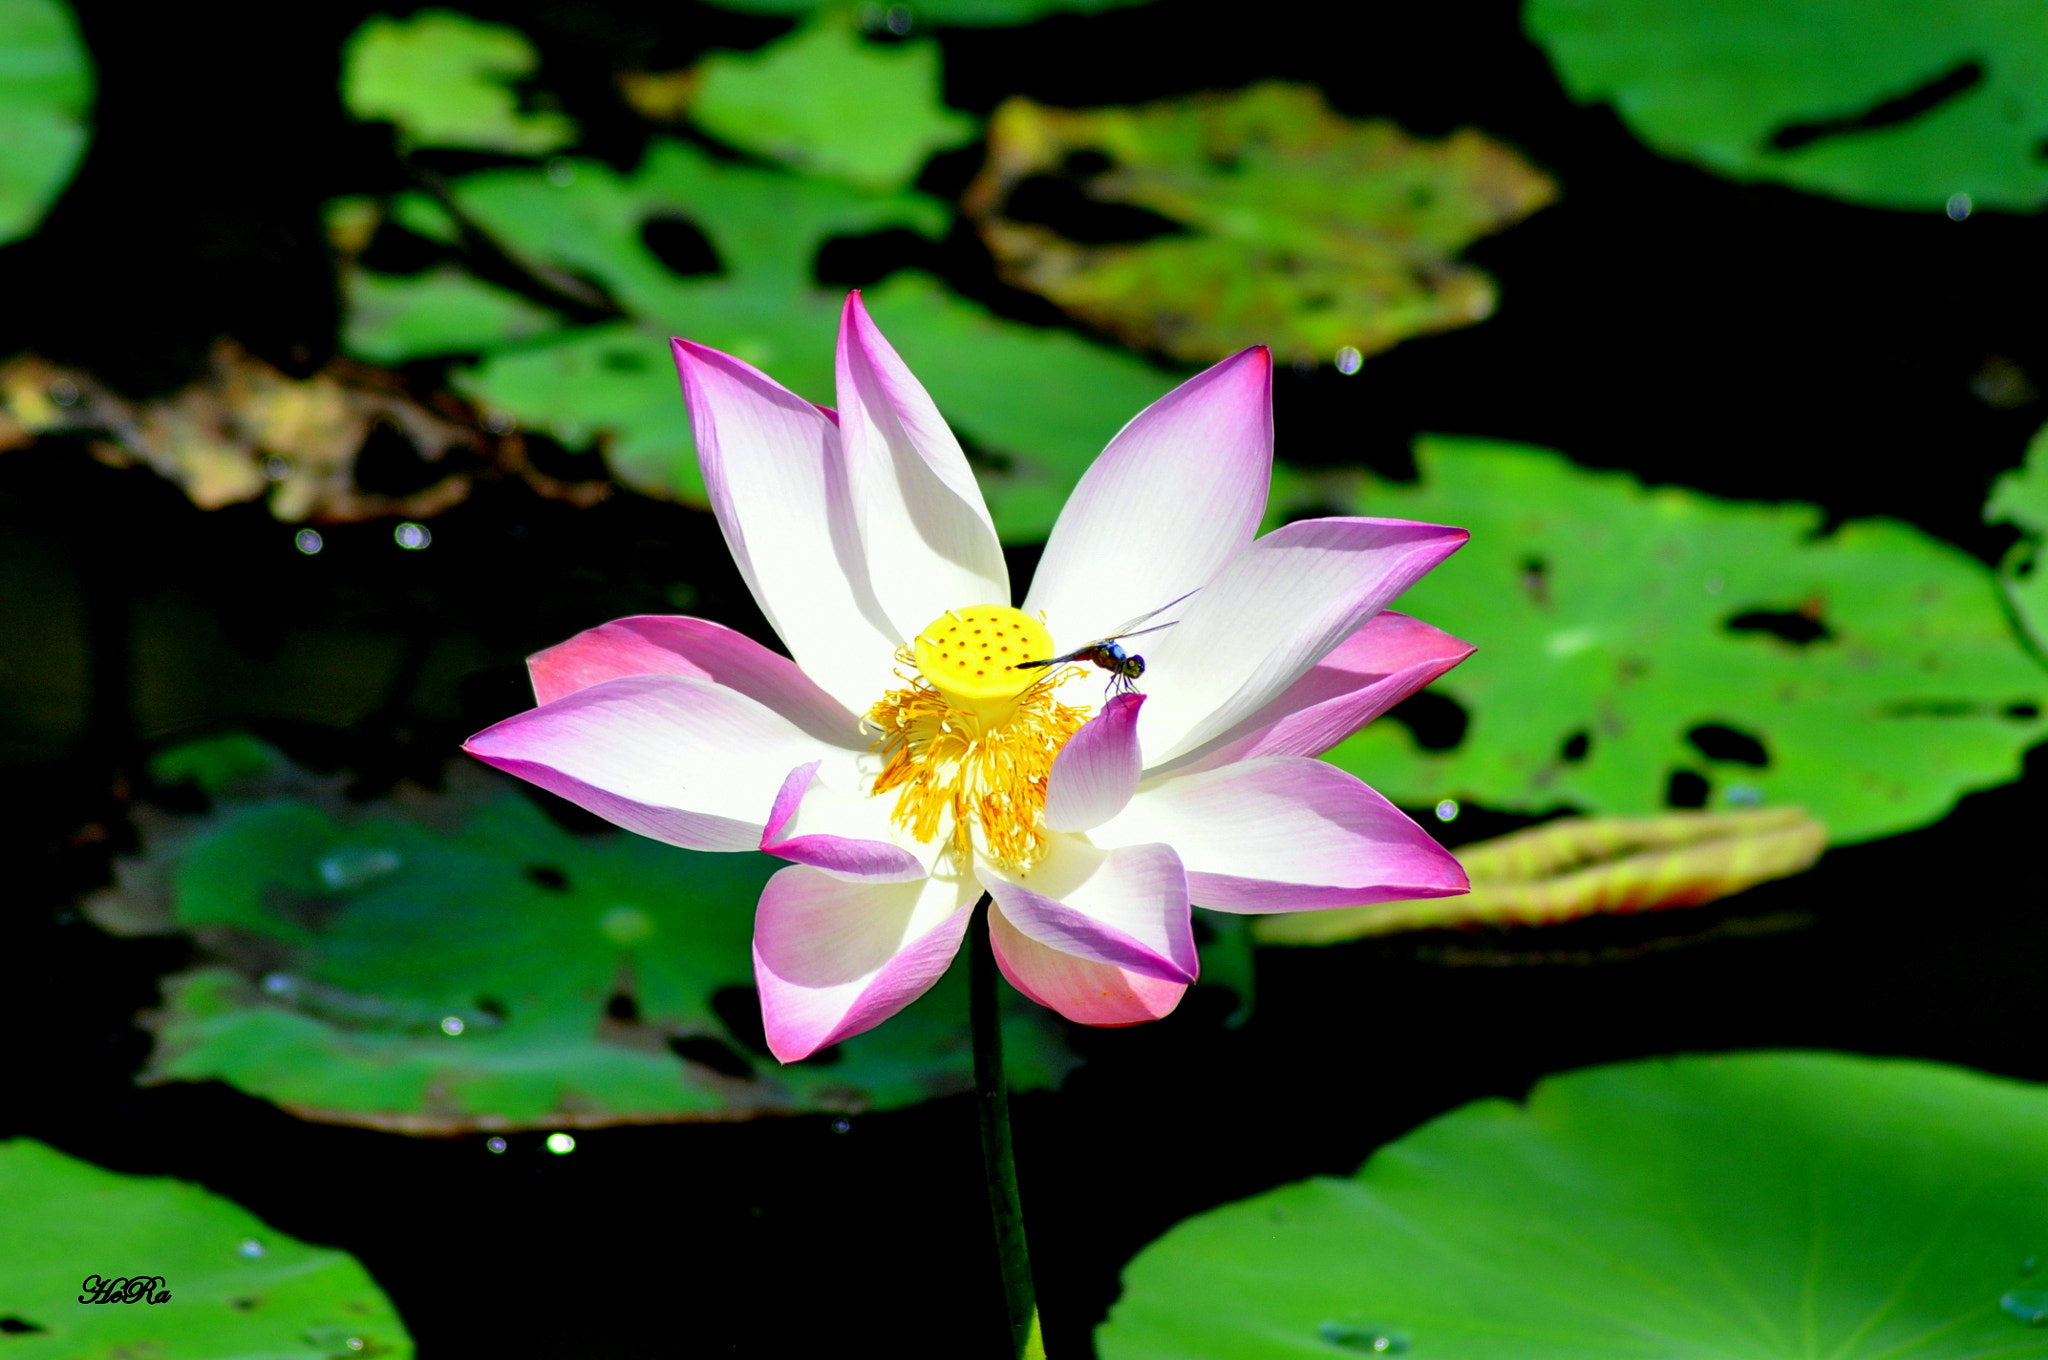 Nikon D90 + Nikon AF Nikkor 70-300mm F4-5.6G sample photo. Lotus flower vietnam photography